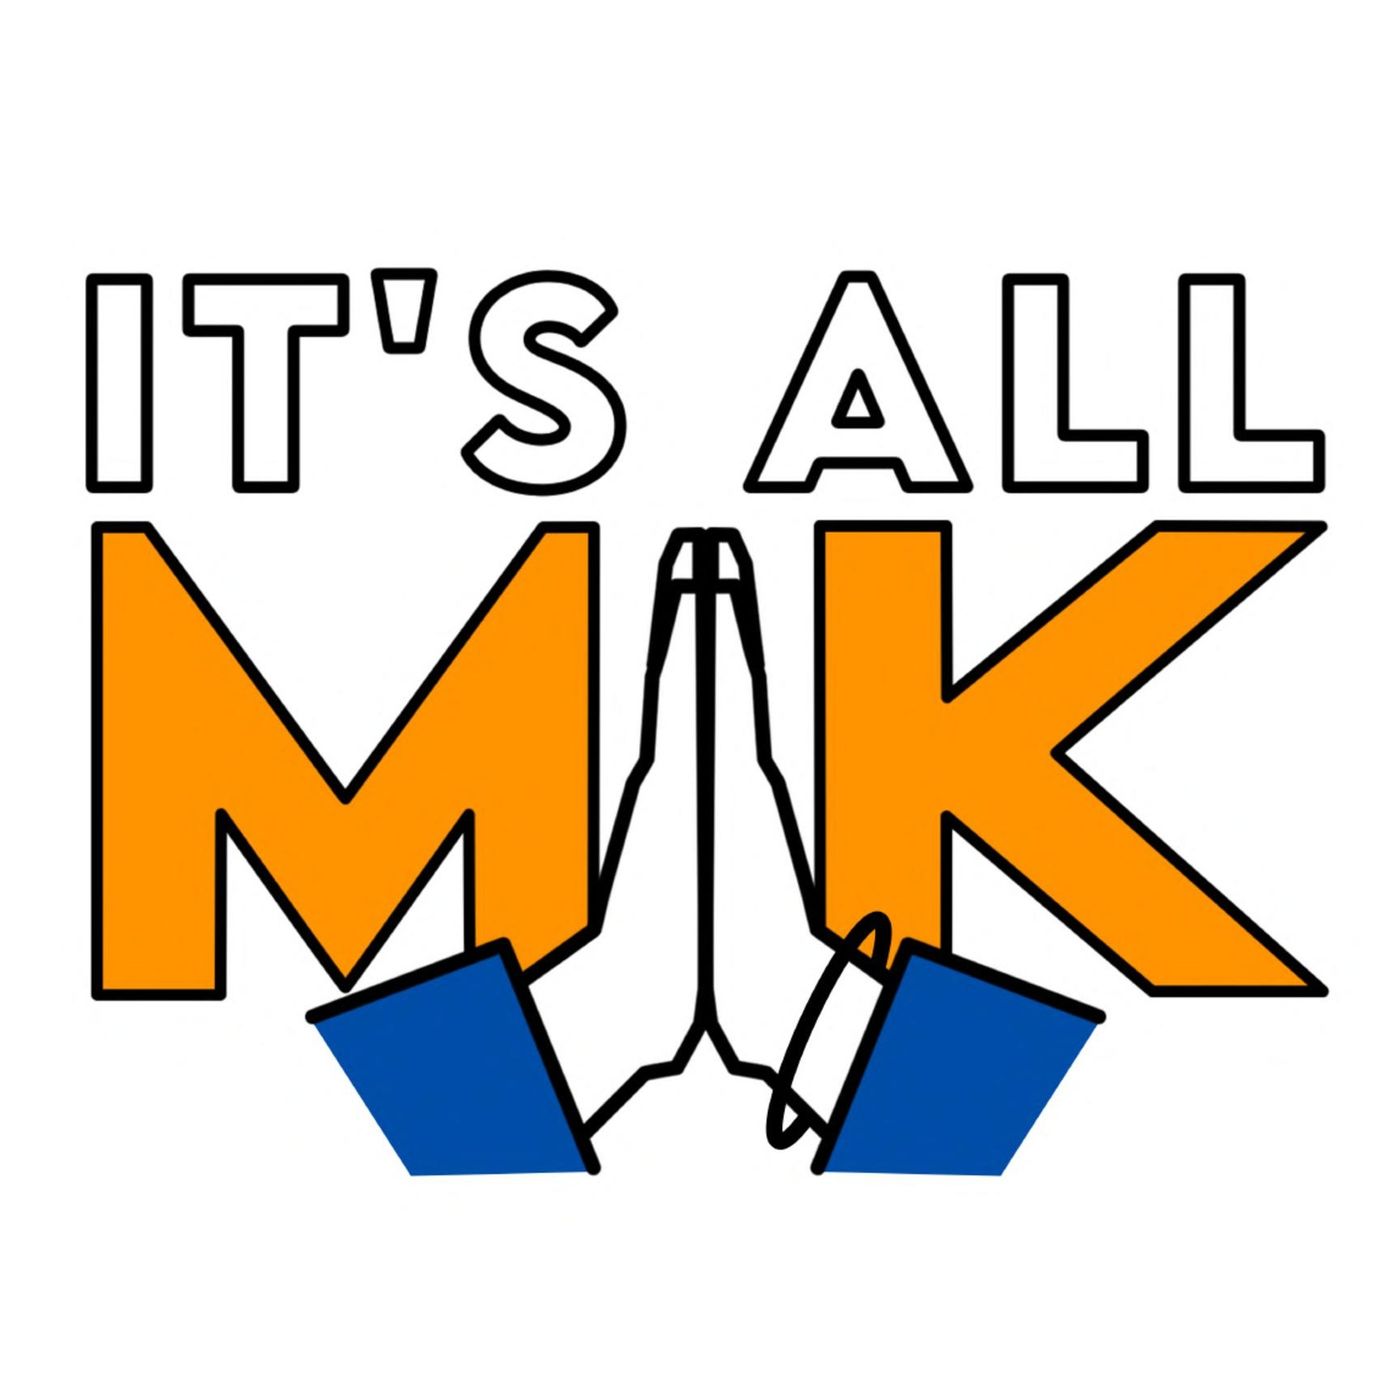 It’s all MK